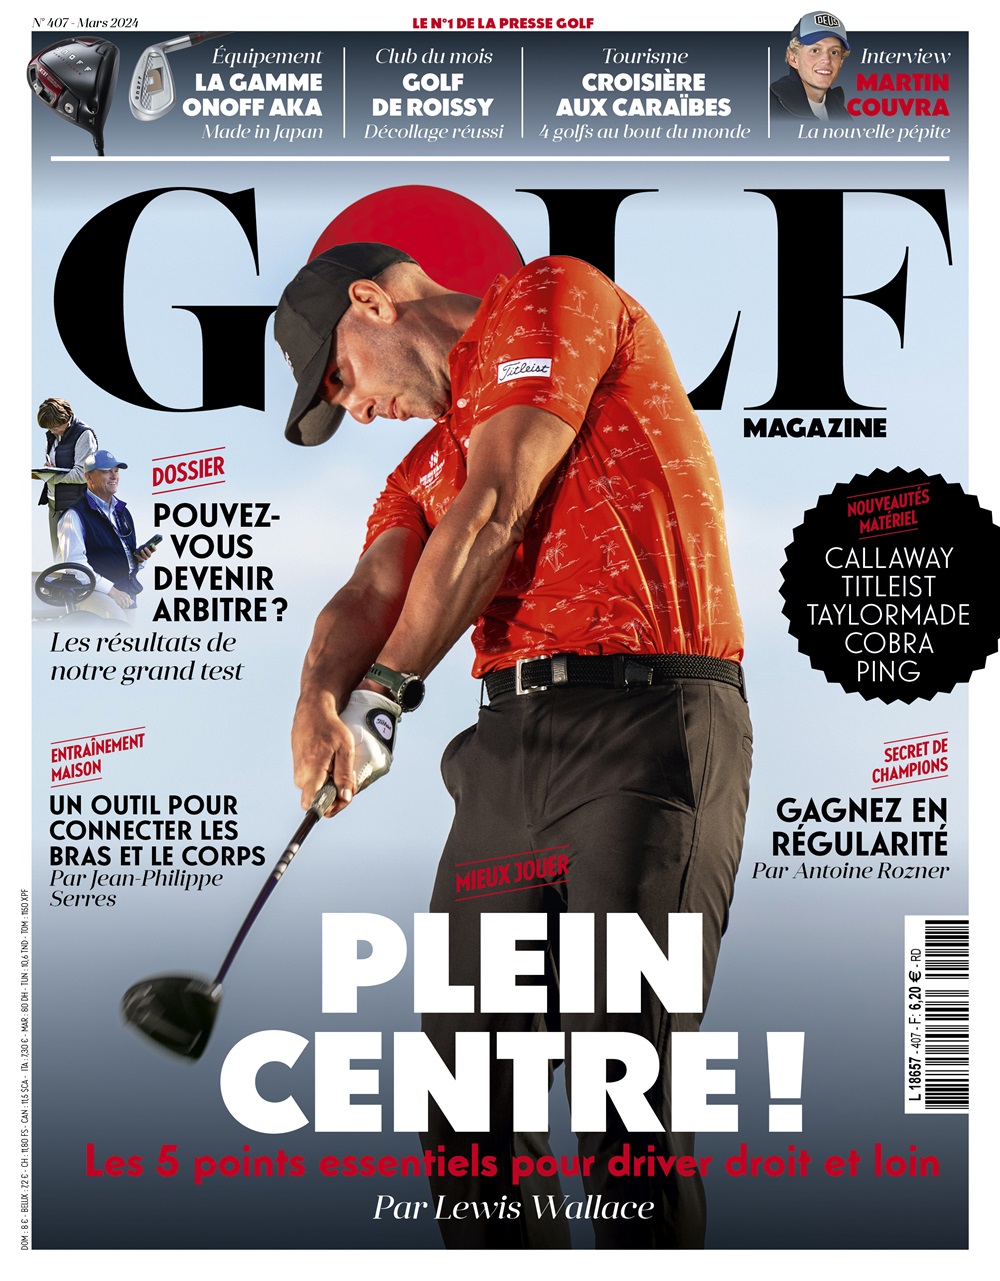 Golf Magazine n°407 : drivez droit et loin !